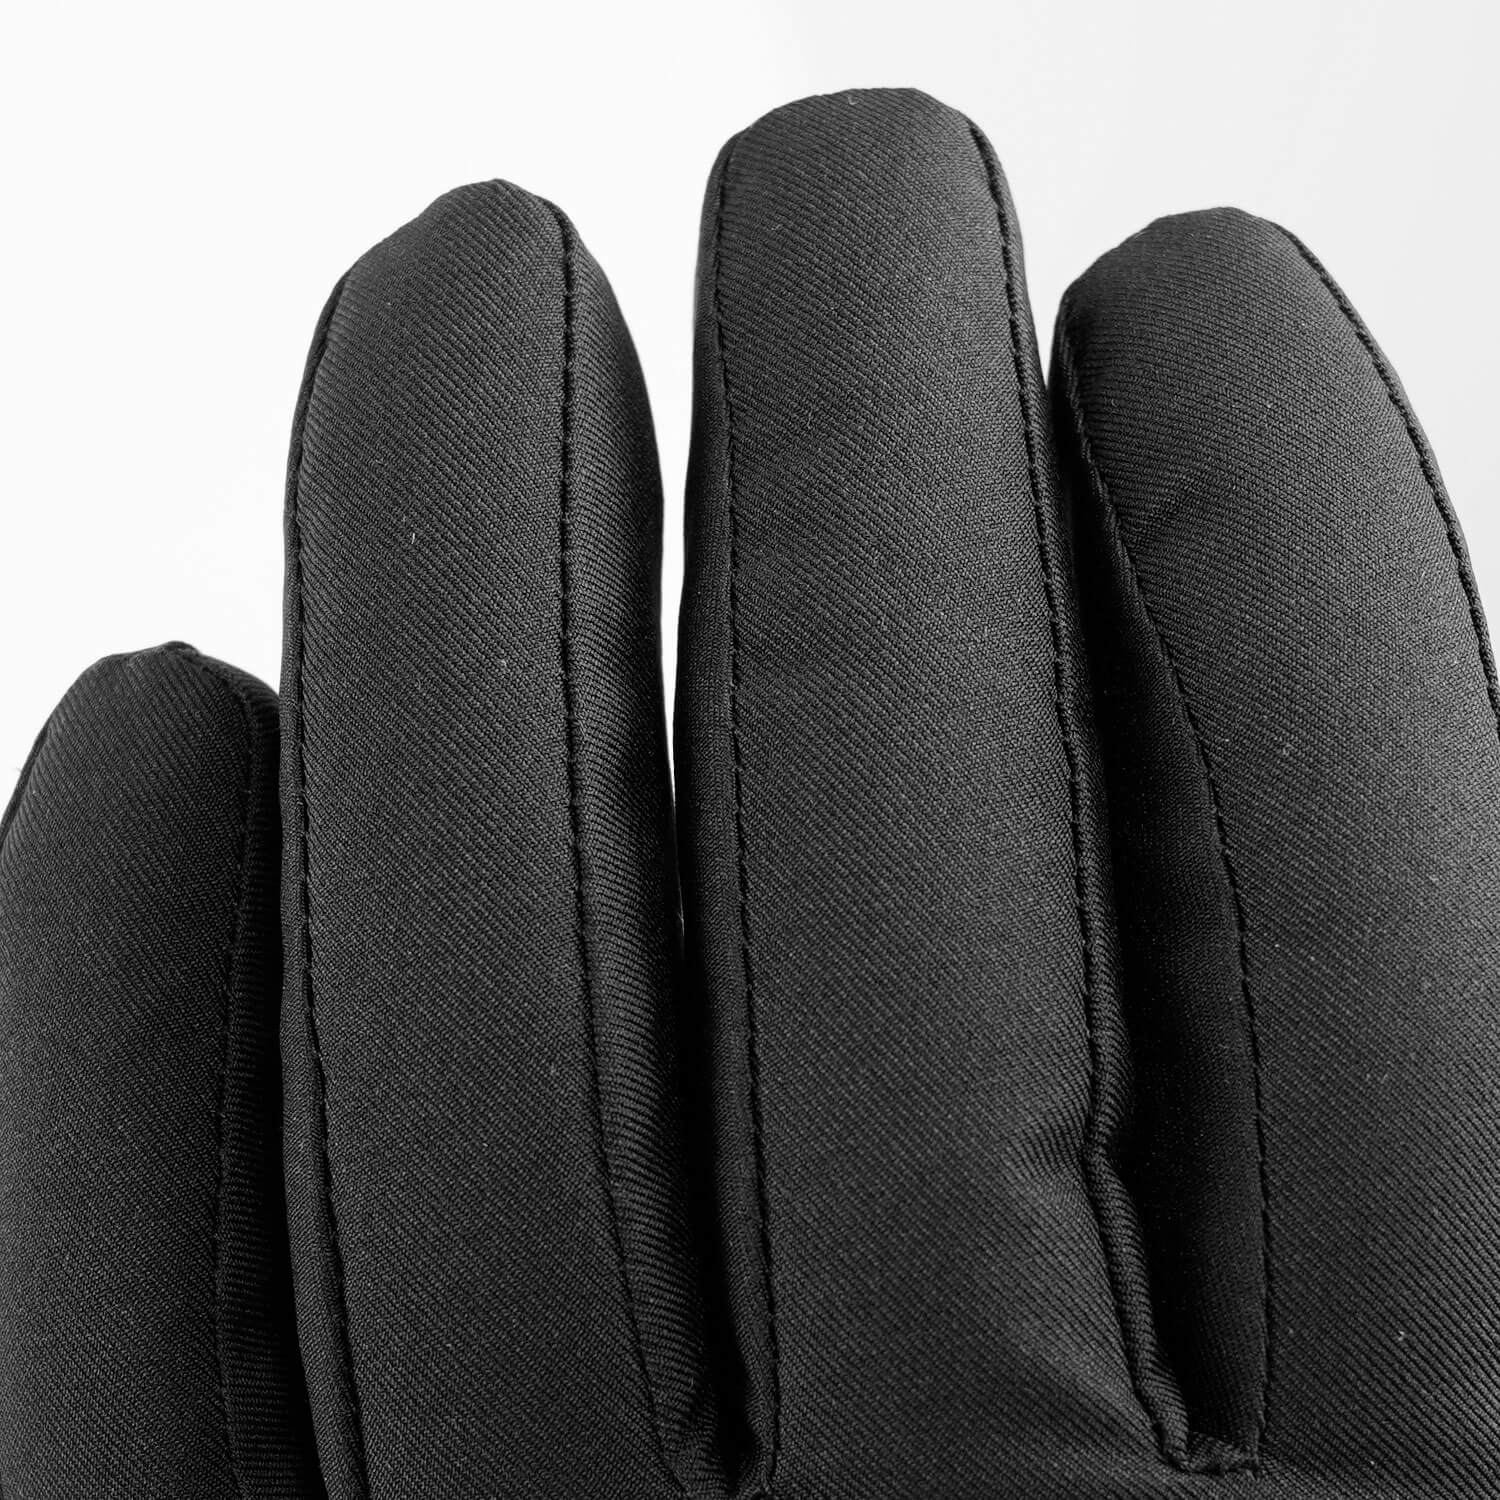 S20 Waterproof Heated Gloves